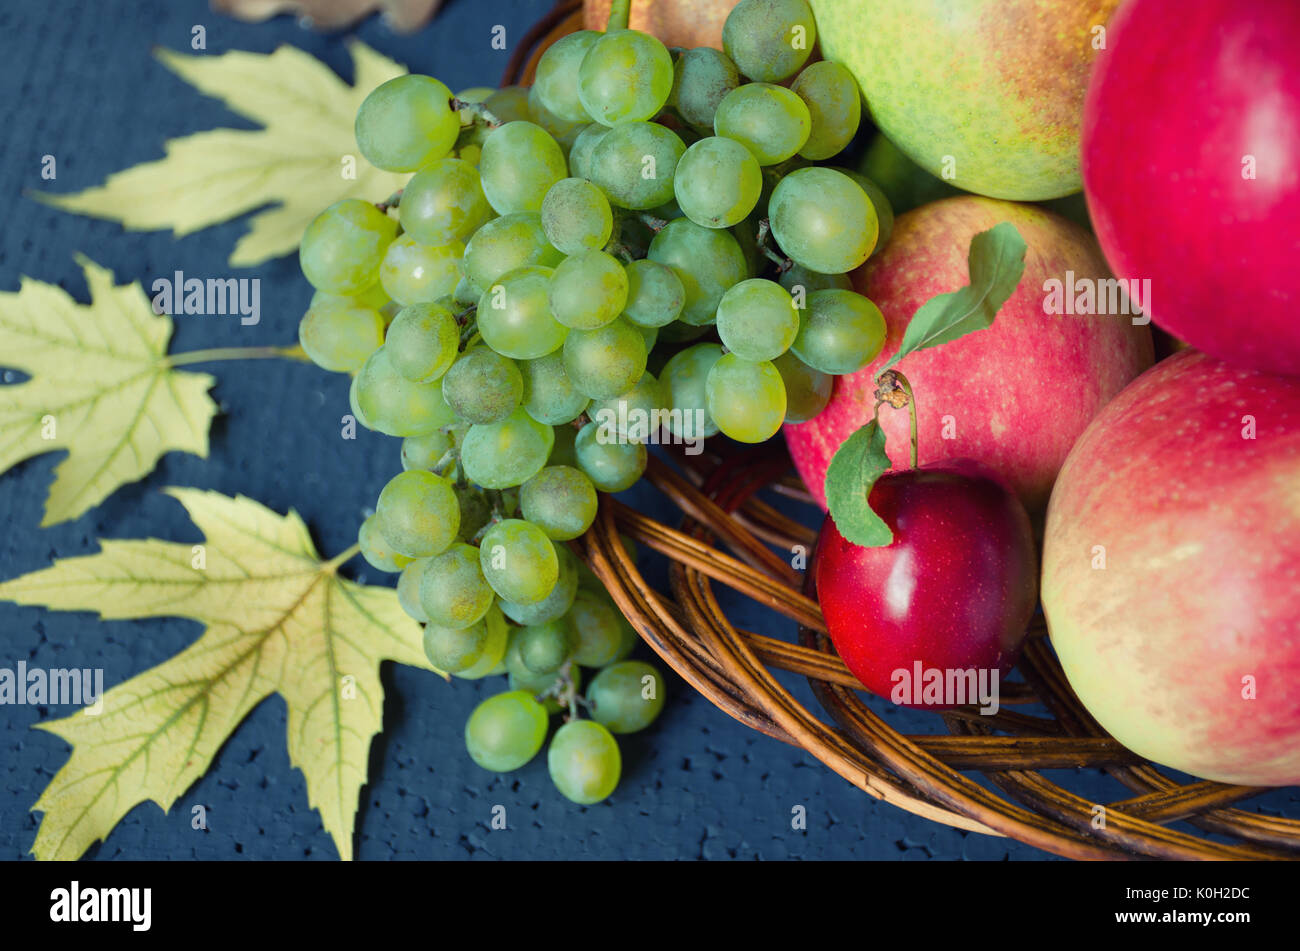 Récolte de fruits mûrs - pommes, raisins, prunes, les poires dans une grande plaque de bois sur un fond noir, décoré avec des feuilles d'érable de l'automne. La récolte d'hiver Banque D'Images